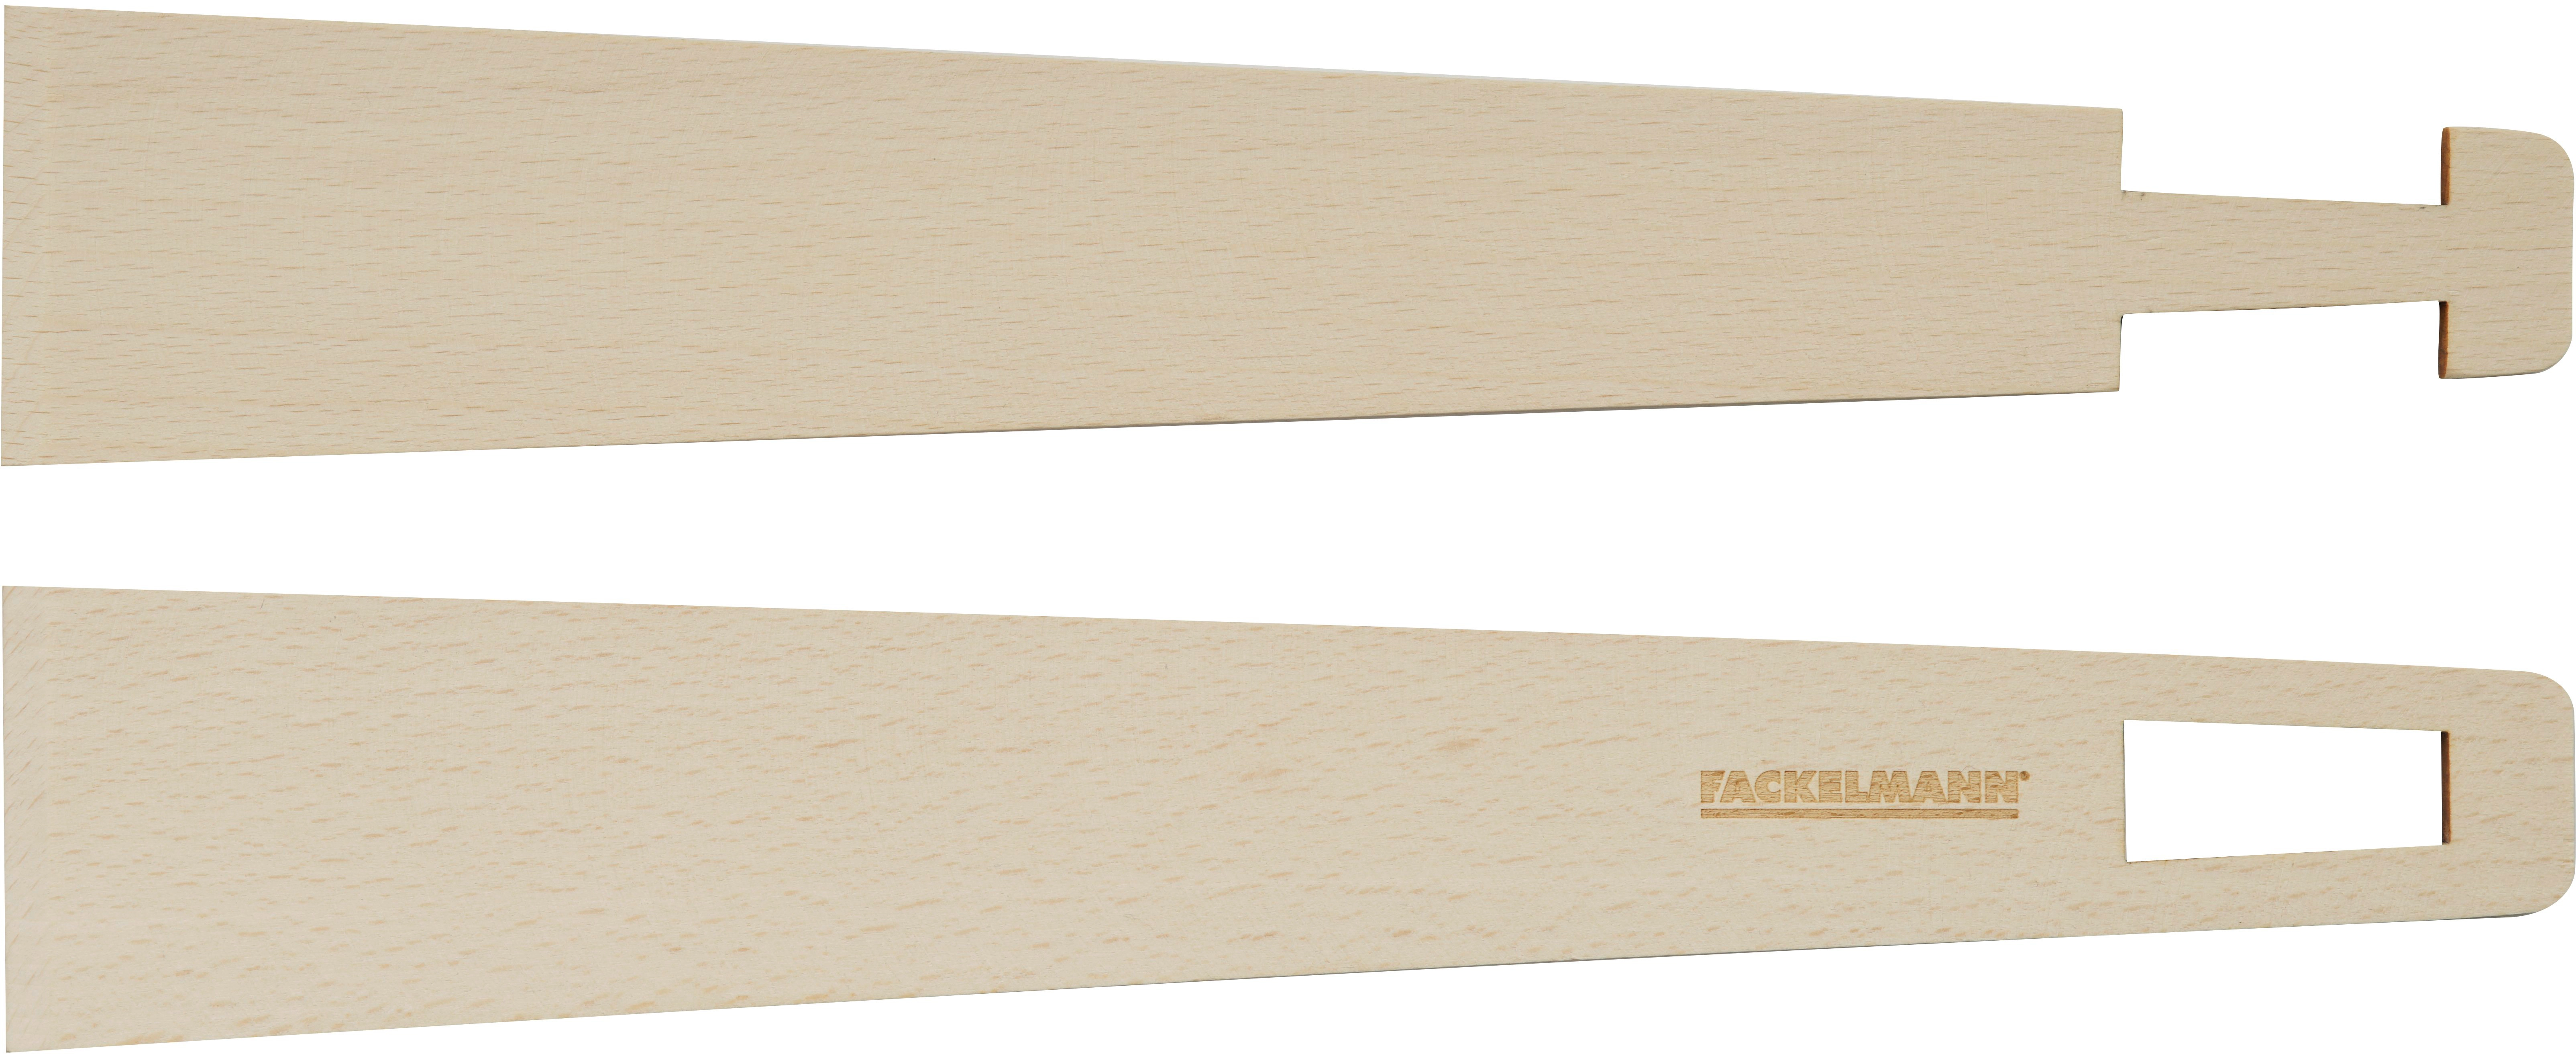 Fackelmann Zange und Wender Fair 2 in 1 20 cm x 6 cm Holz kaufen bei OBI